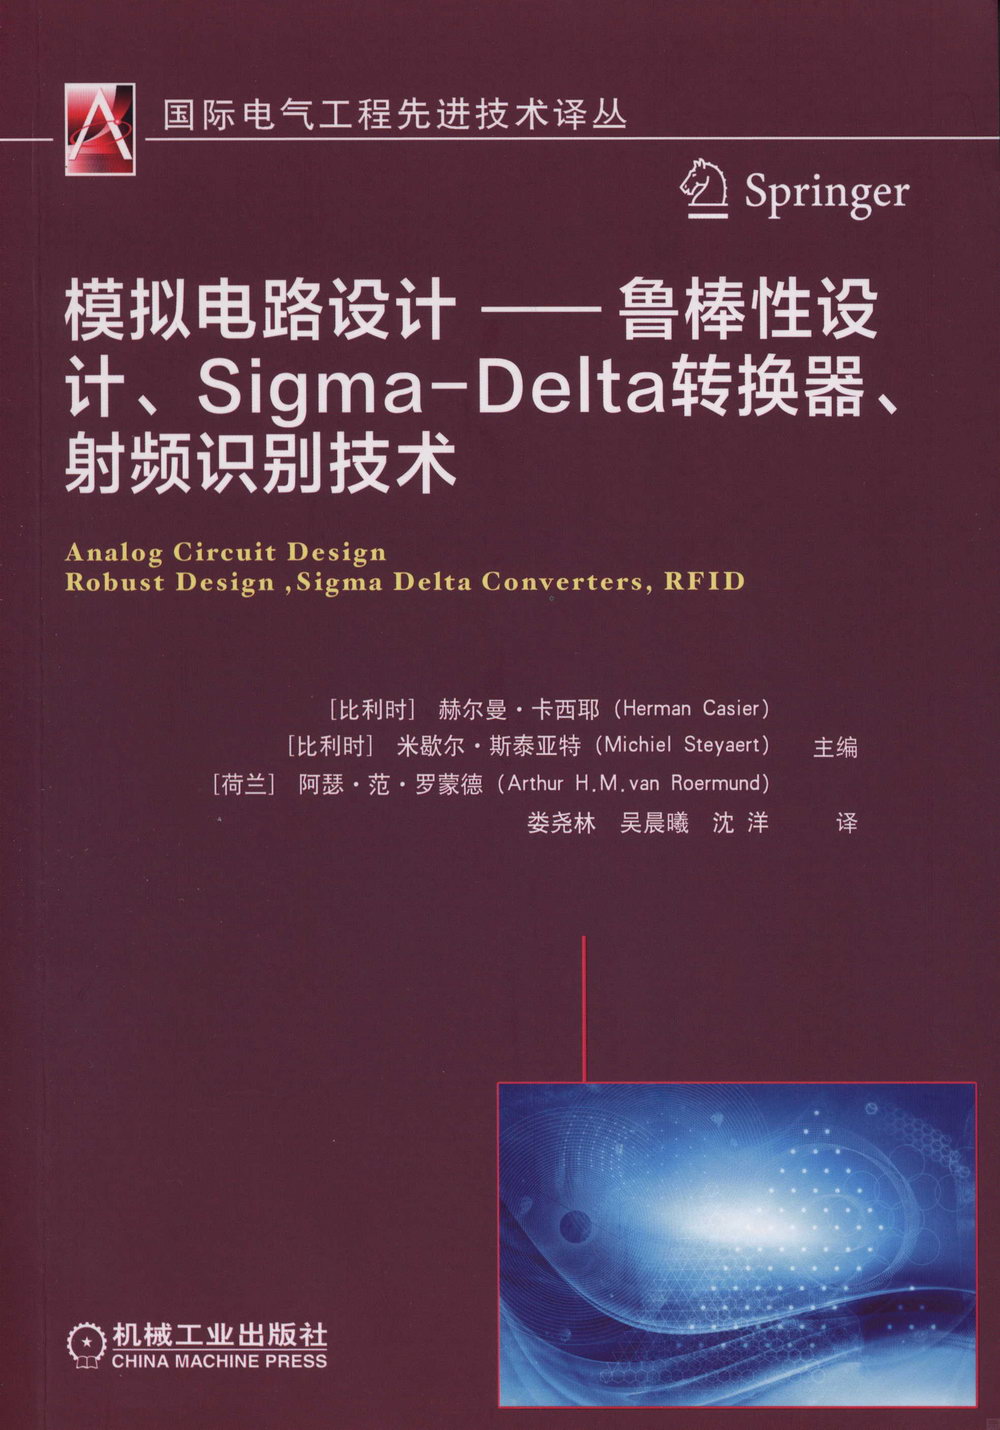 模擬電路設計--魯棒性設計、Sigma-Delta轉換器、射頻識別技術